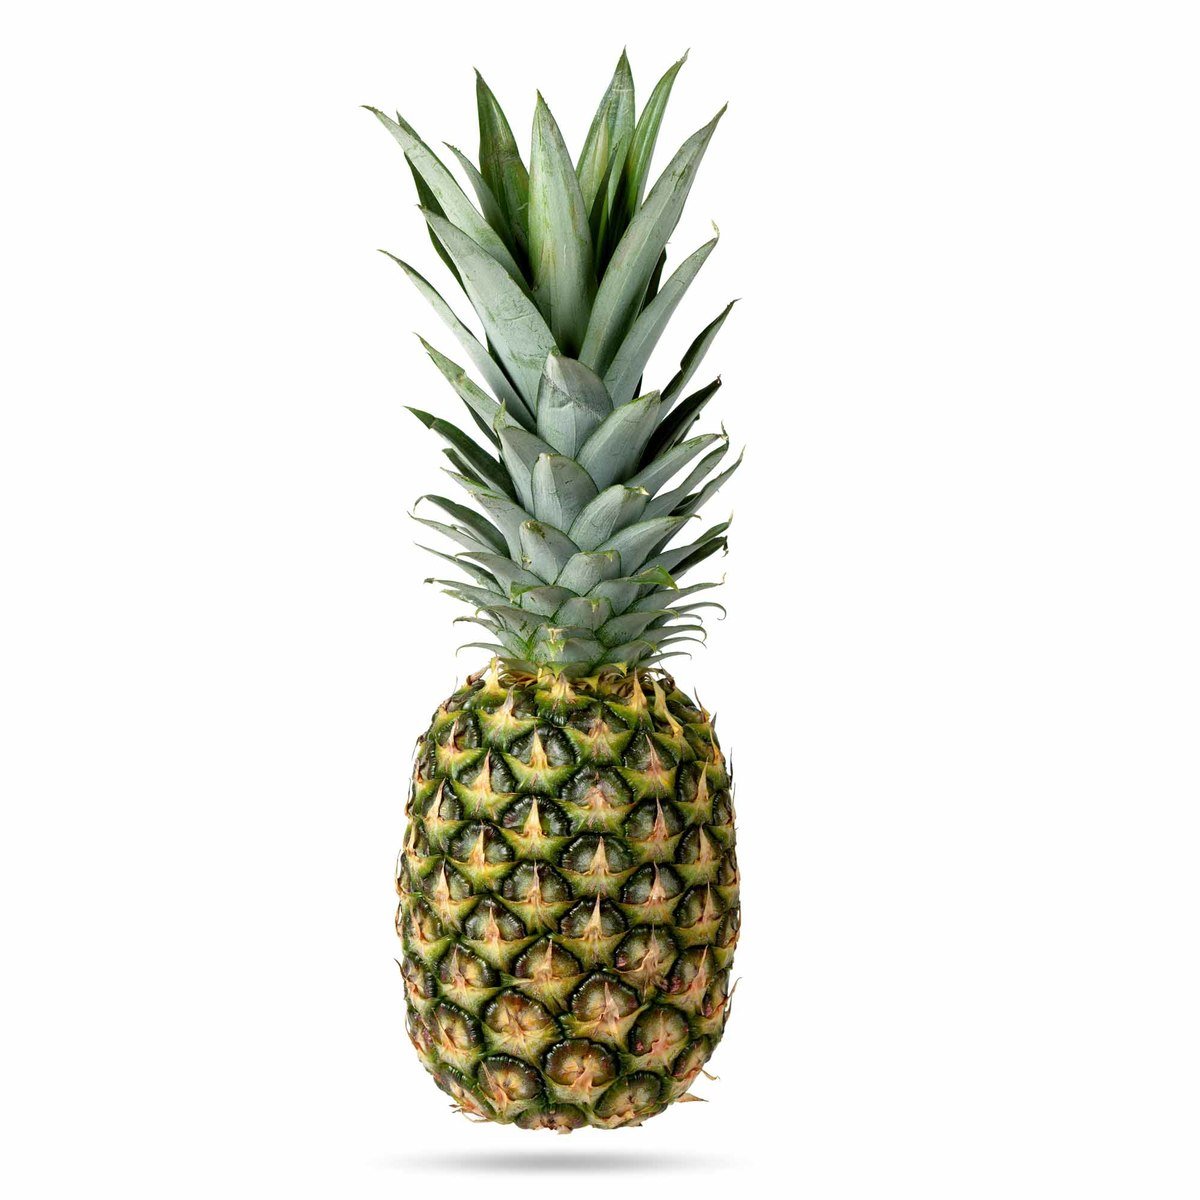 اشتري قم بشراء اناناس اندونيسي 1 قطعة Online at Best Price من الموقع - من لولو هايبر ماركت Pineapple في السعودية